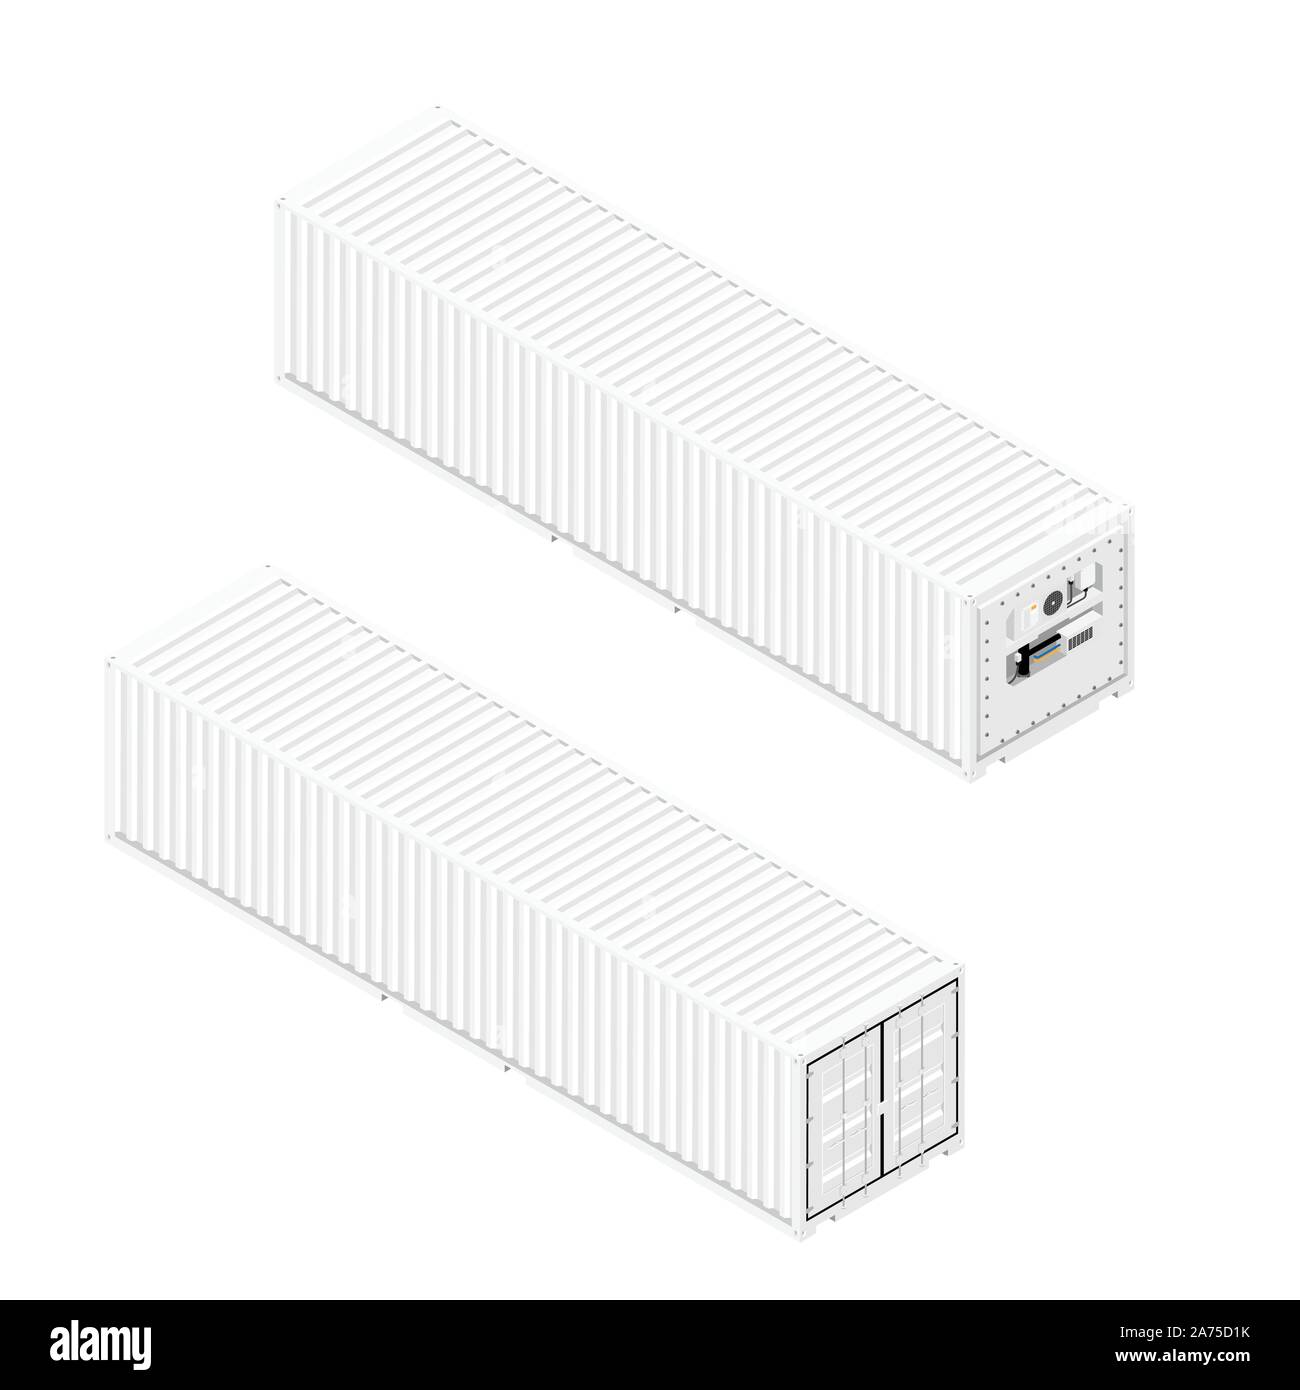 Kühlcontainer Vorder-und Rückseite isometrische Ansicht auf weißem Hintergrund. Stock Vektor